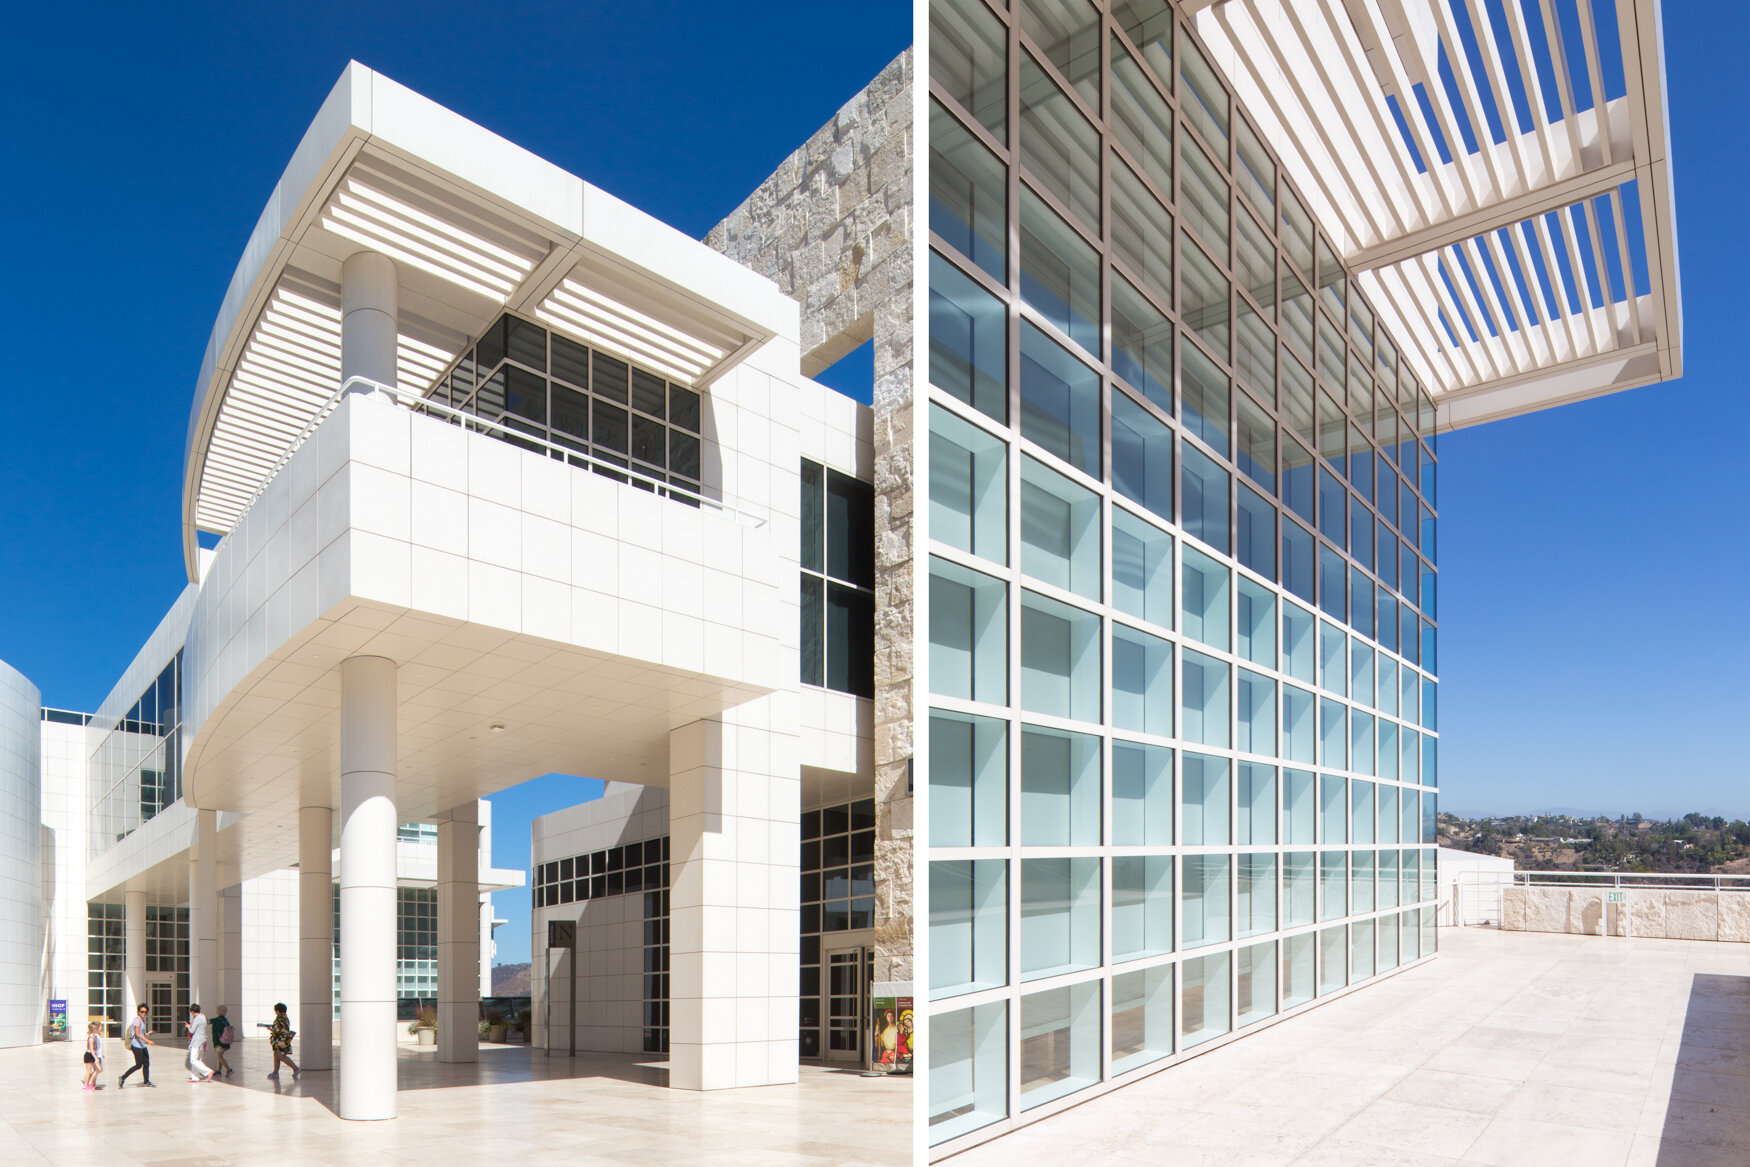 THE GETTY MUEUM, LOS ANGELES  Richard Meier